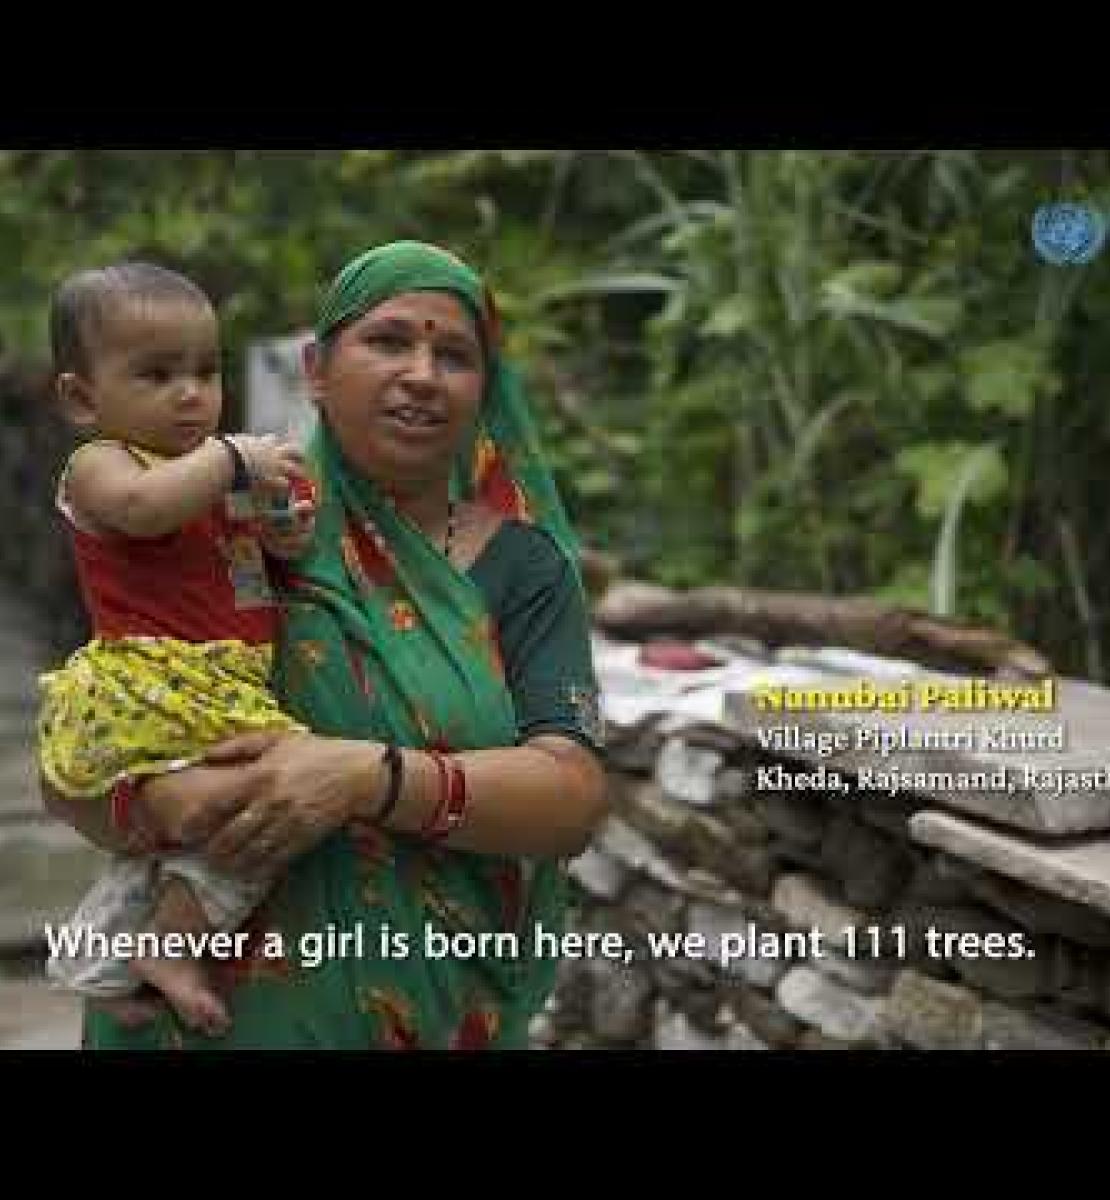 "الفتيات والمياه والأشجار": حملة مميزة في الهند لدعم النسوية الإيكولوجية